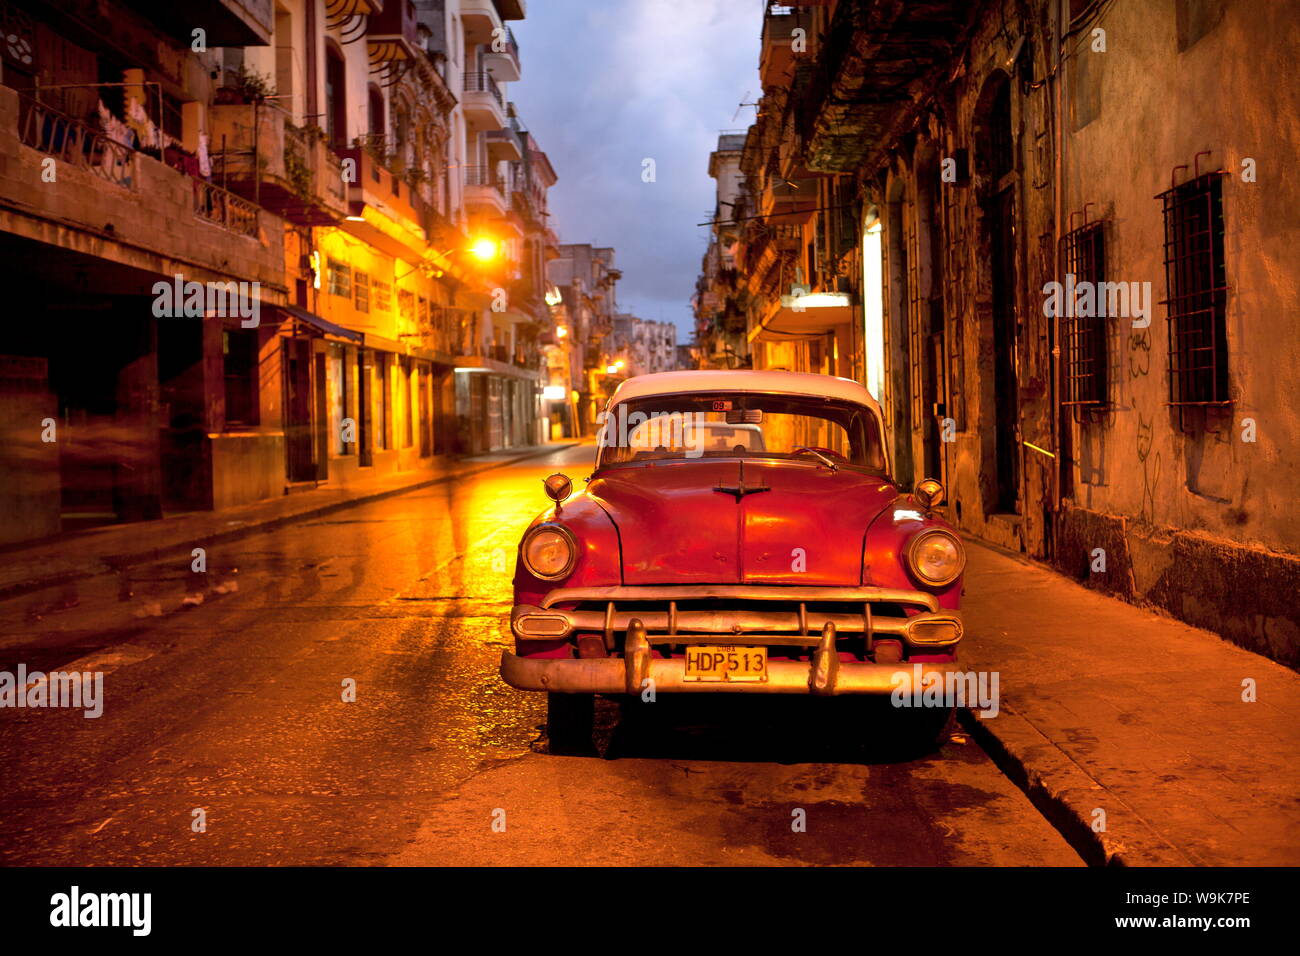 Red vintage americano auto parcheggiata su una strada illuminata nel centro di Avana di notte, l'Avana, Cuba, West Indies, America Centrale Foto Stock